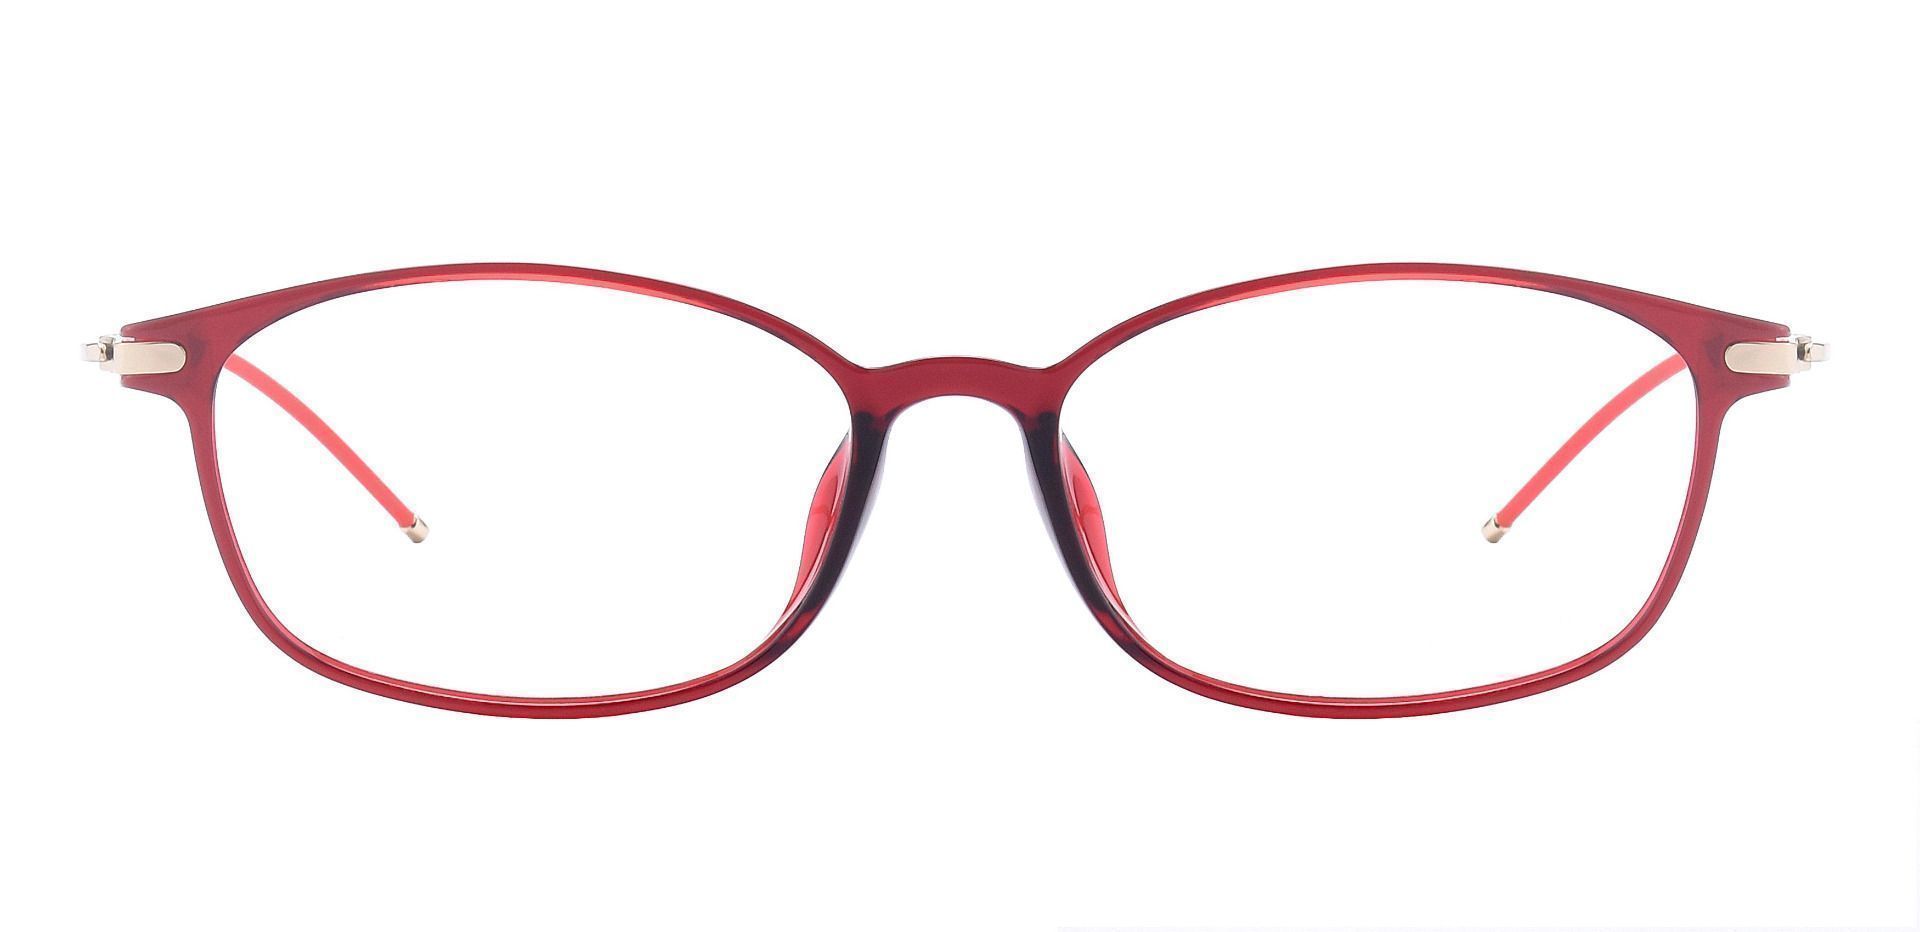 Decker Oval Non-Rx Glasses - Red